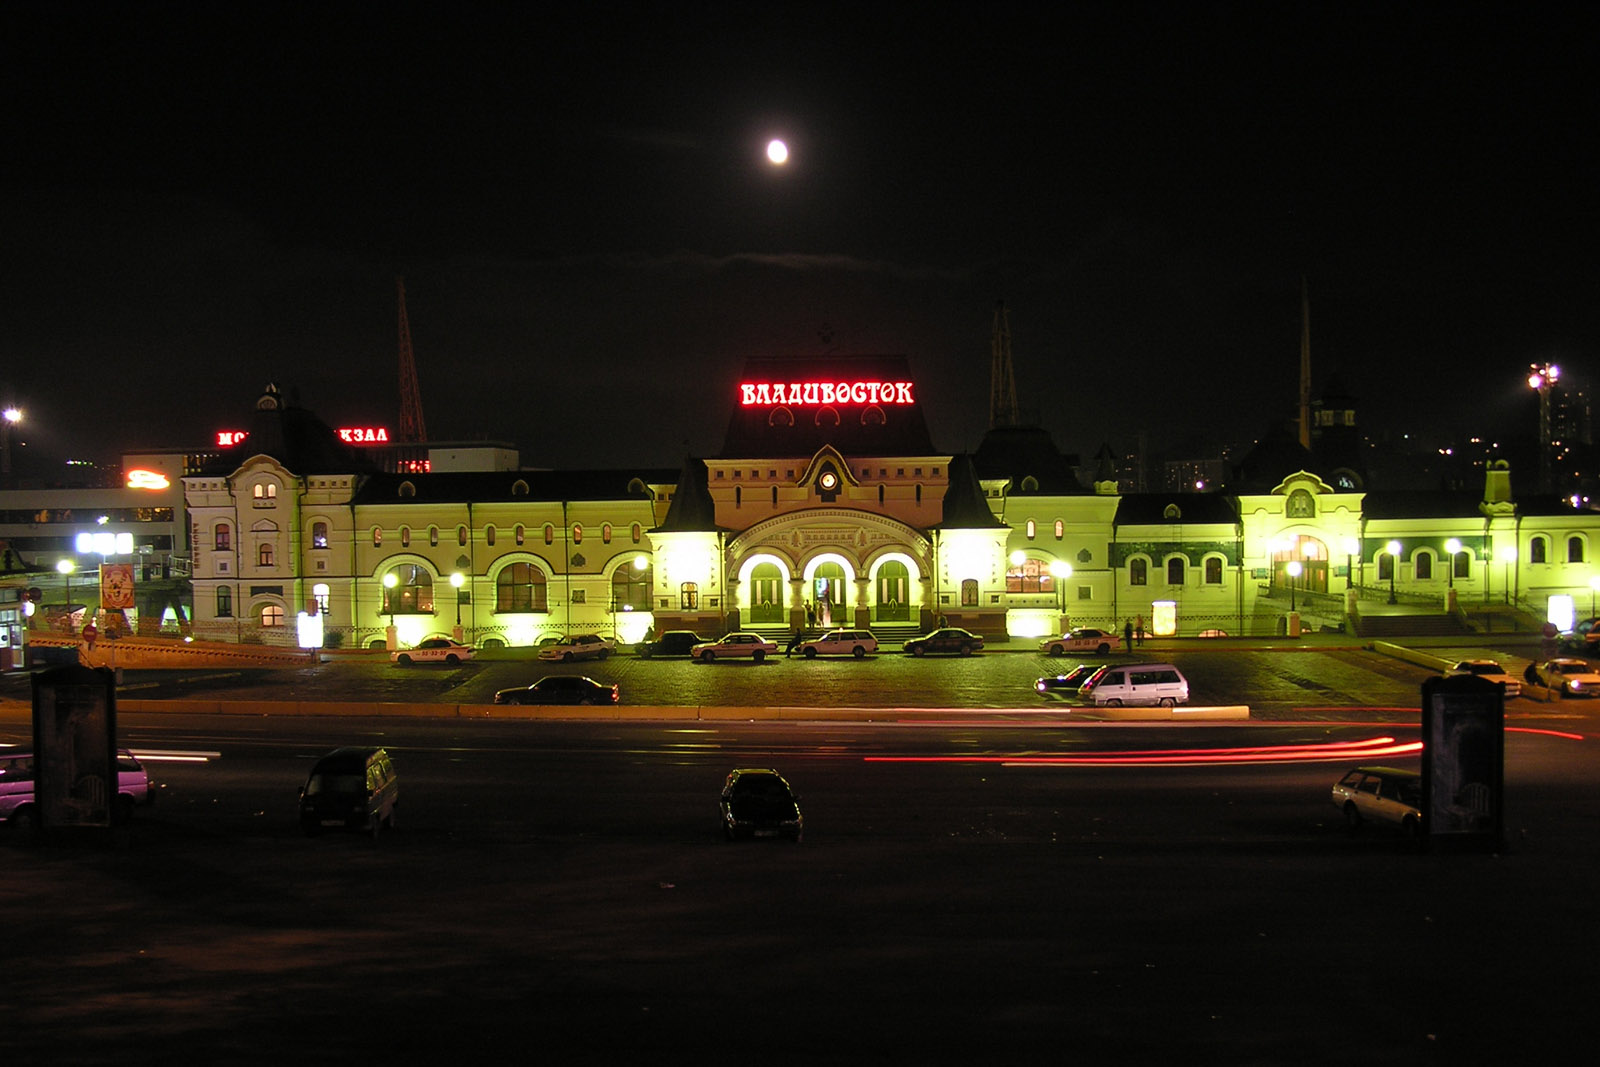 Вокзал ночью